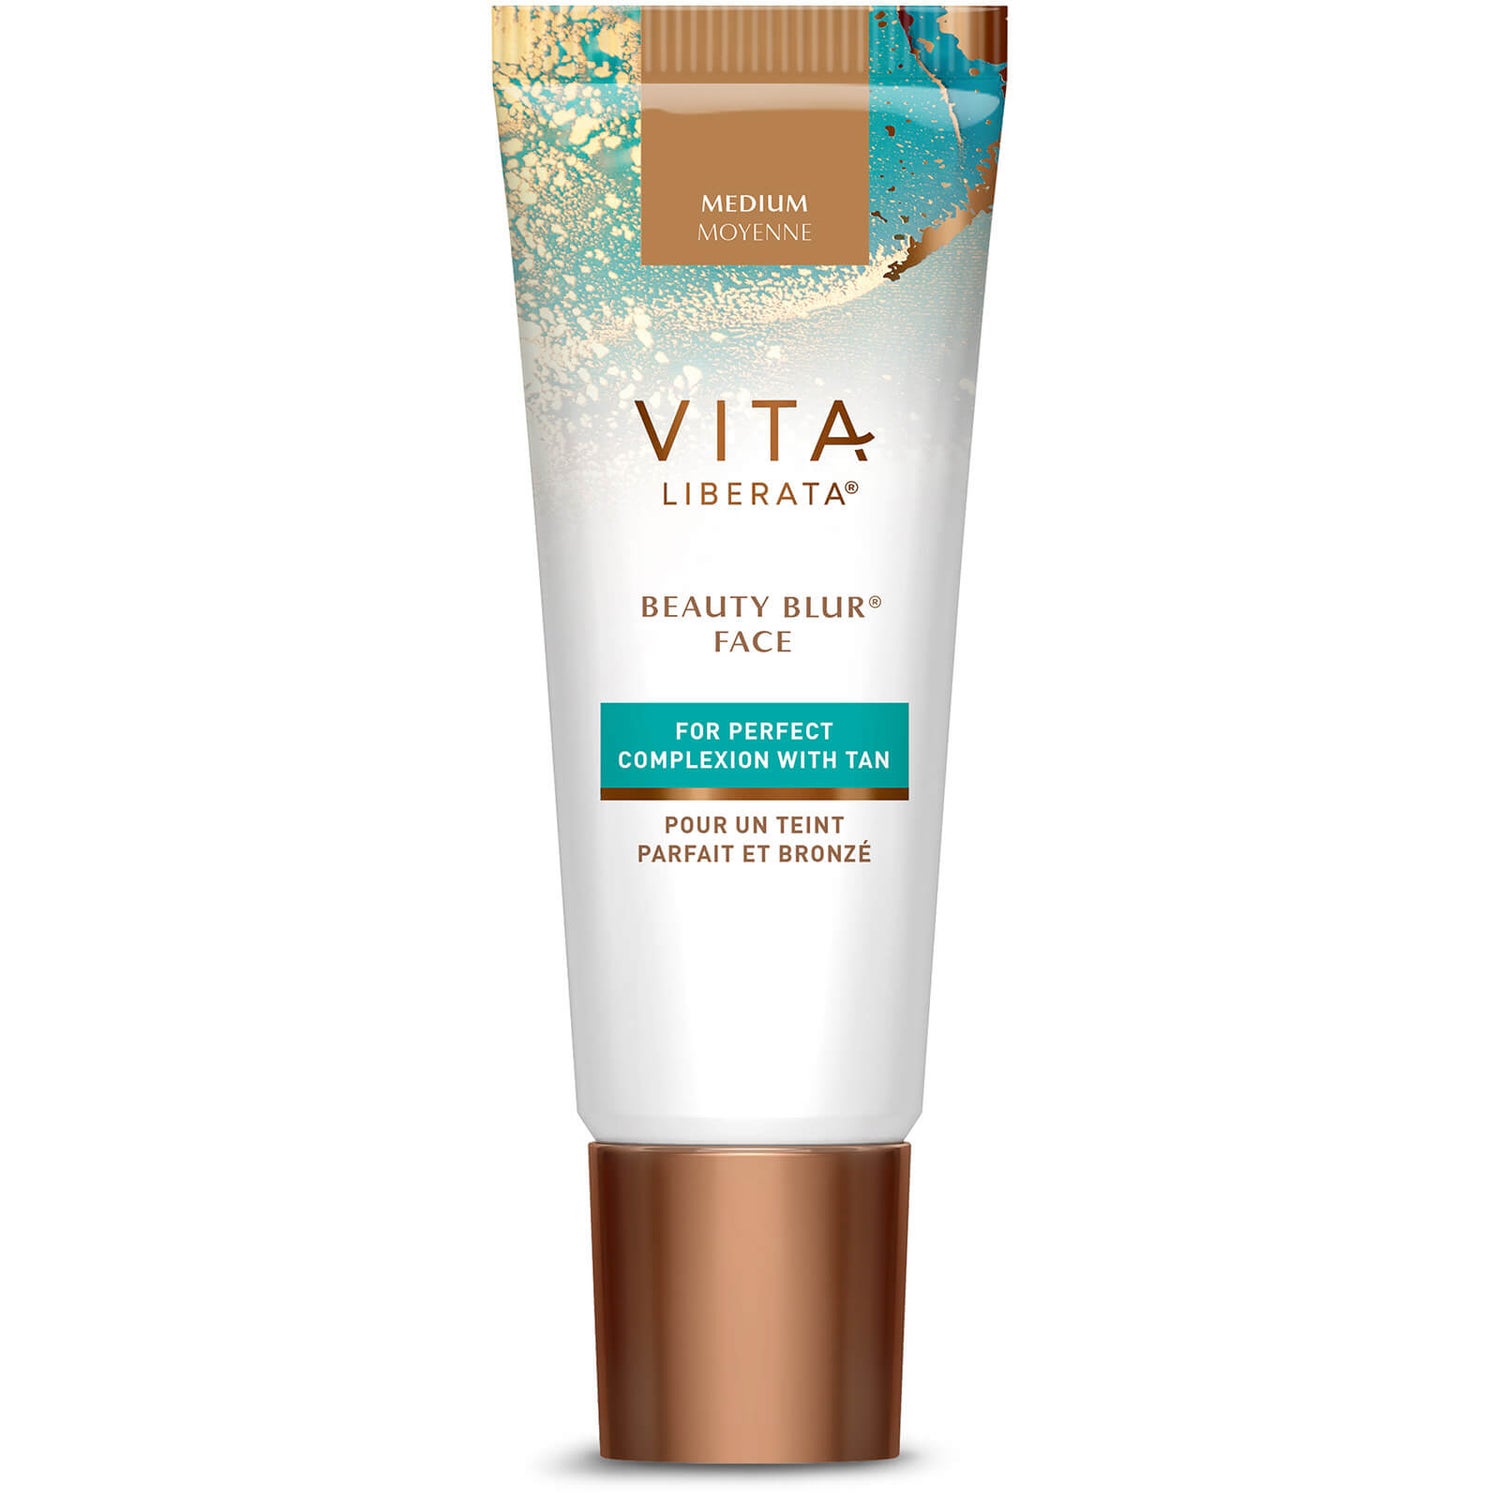 Vita Liberata Beauty Blur Face with Tan Complexion Perfector 30ml (Varie tonalità disponibili)